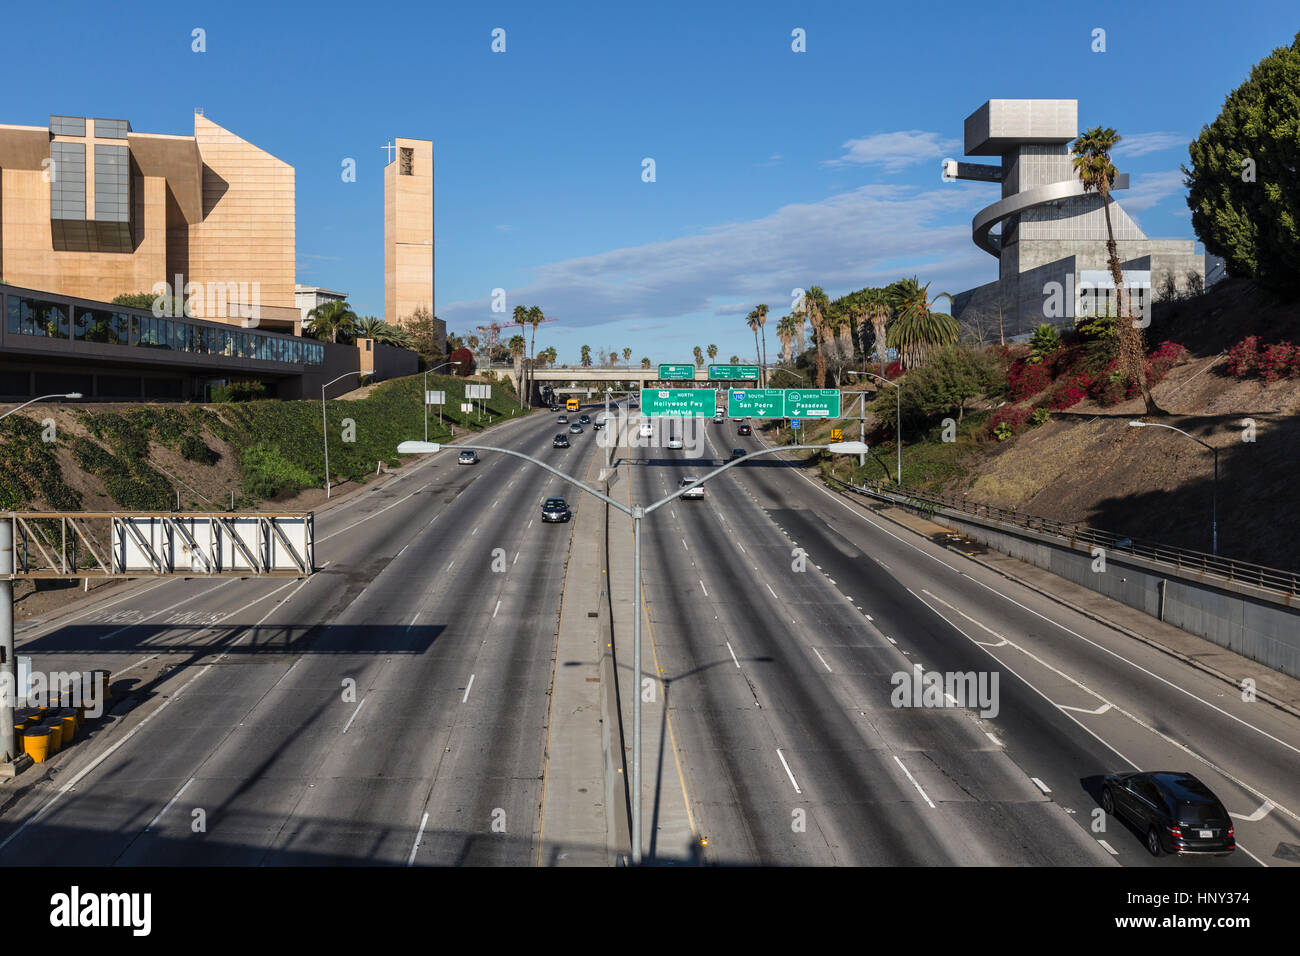 LOS ANGELES, Kalifornien – 24. November 2013: Freies Wochenende Verkehrsansicht der Hollywood 101 Freeway, modernsten unserer lieben Frau von der Angeles katholischen Cathe Stockfoto